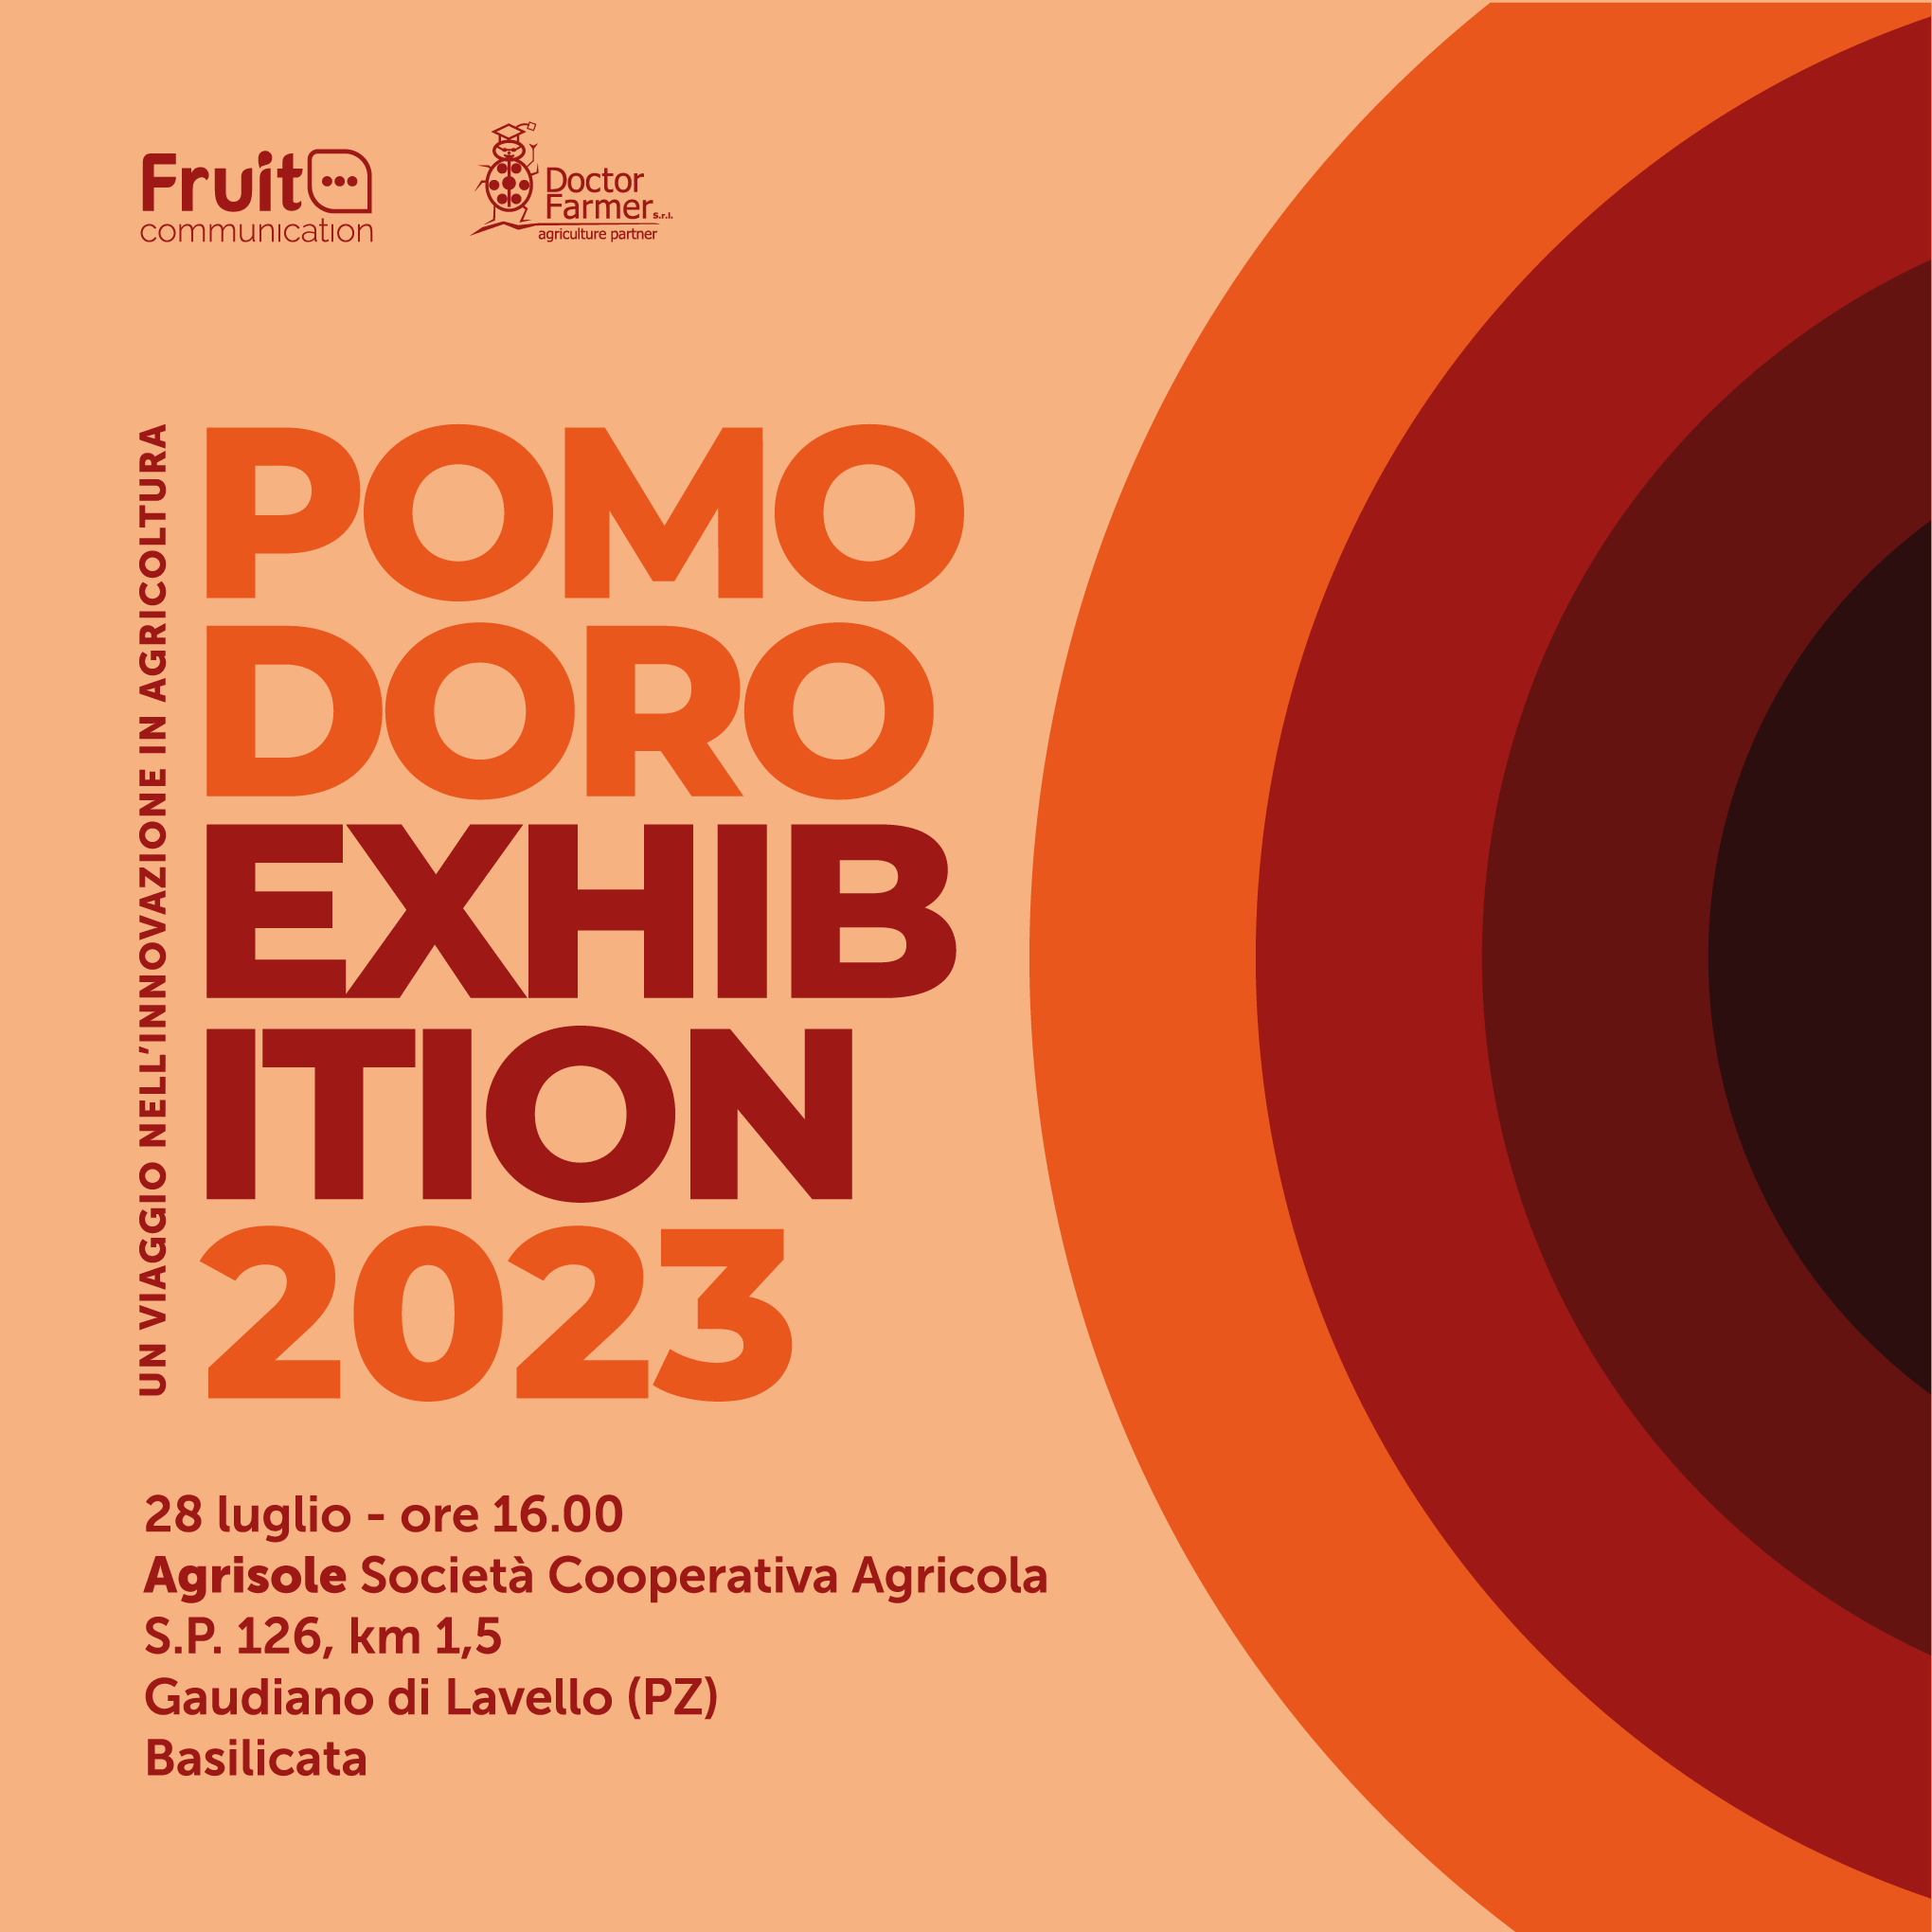 Pomodoro Exhibition 2023 – Un viaggio nell’innovazione in agricoltura